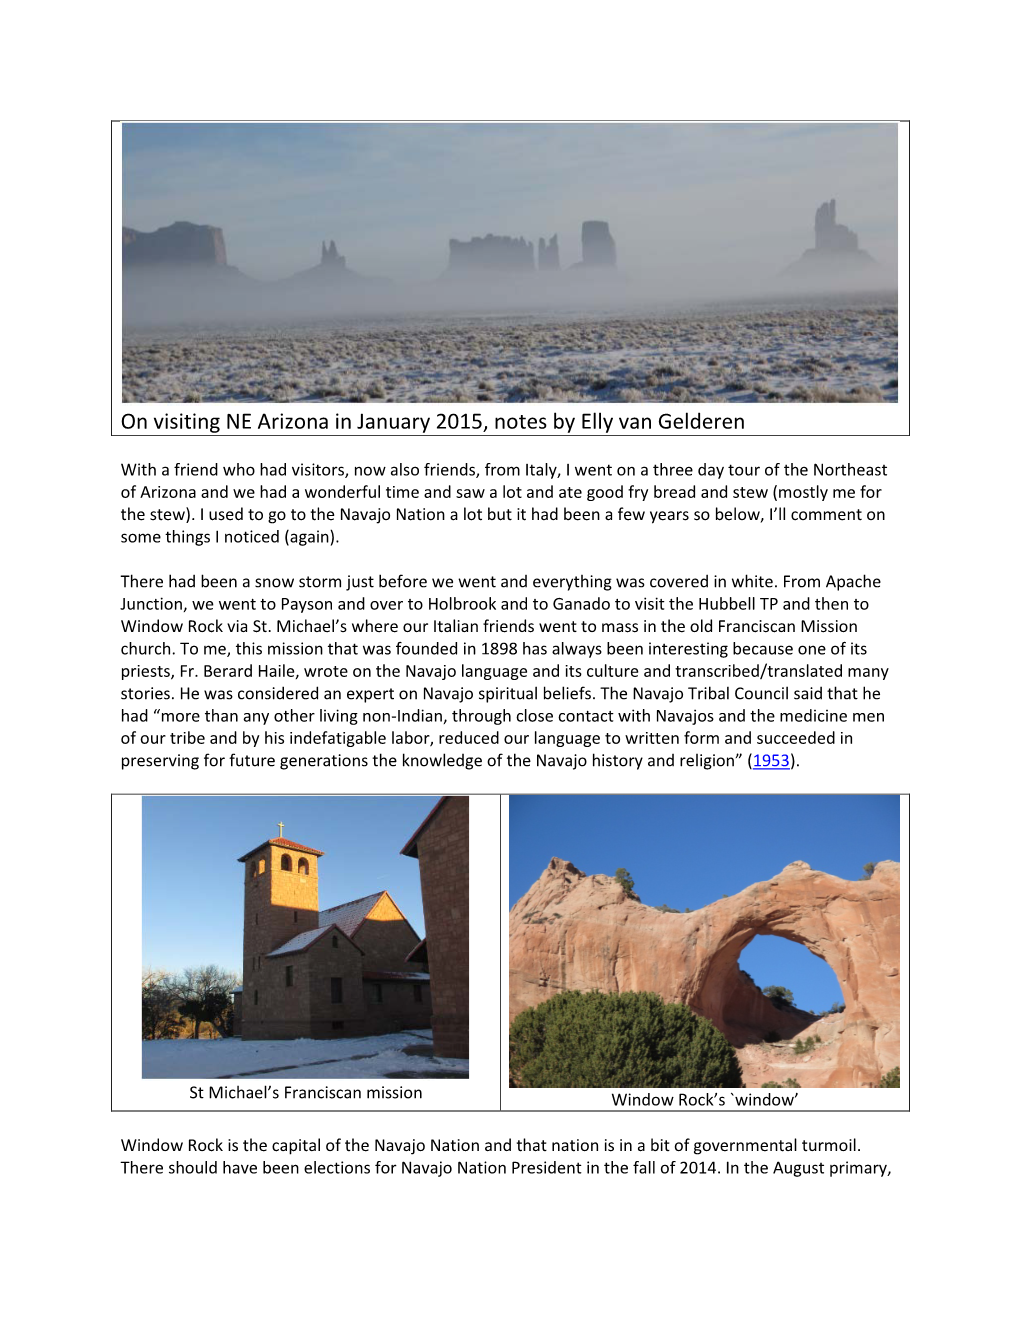 On Visiting NE Arizona in January 2015, Notes by Elly Van Gelderen